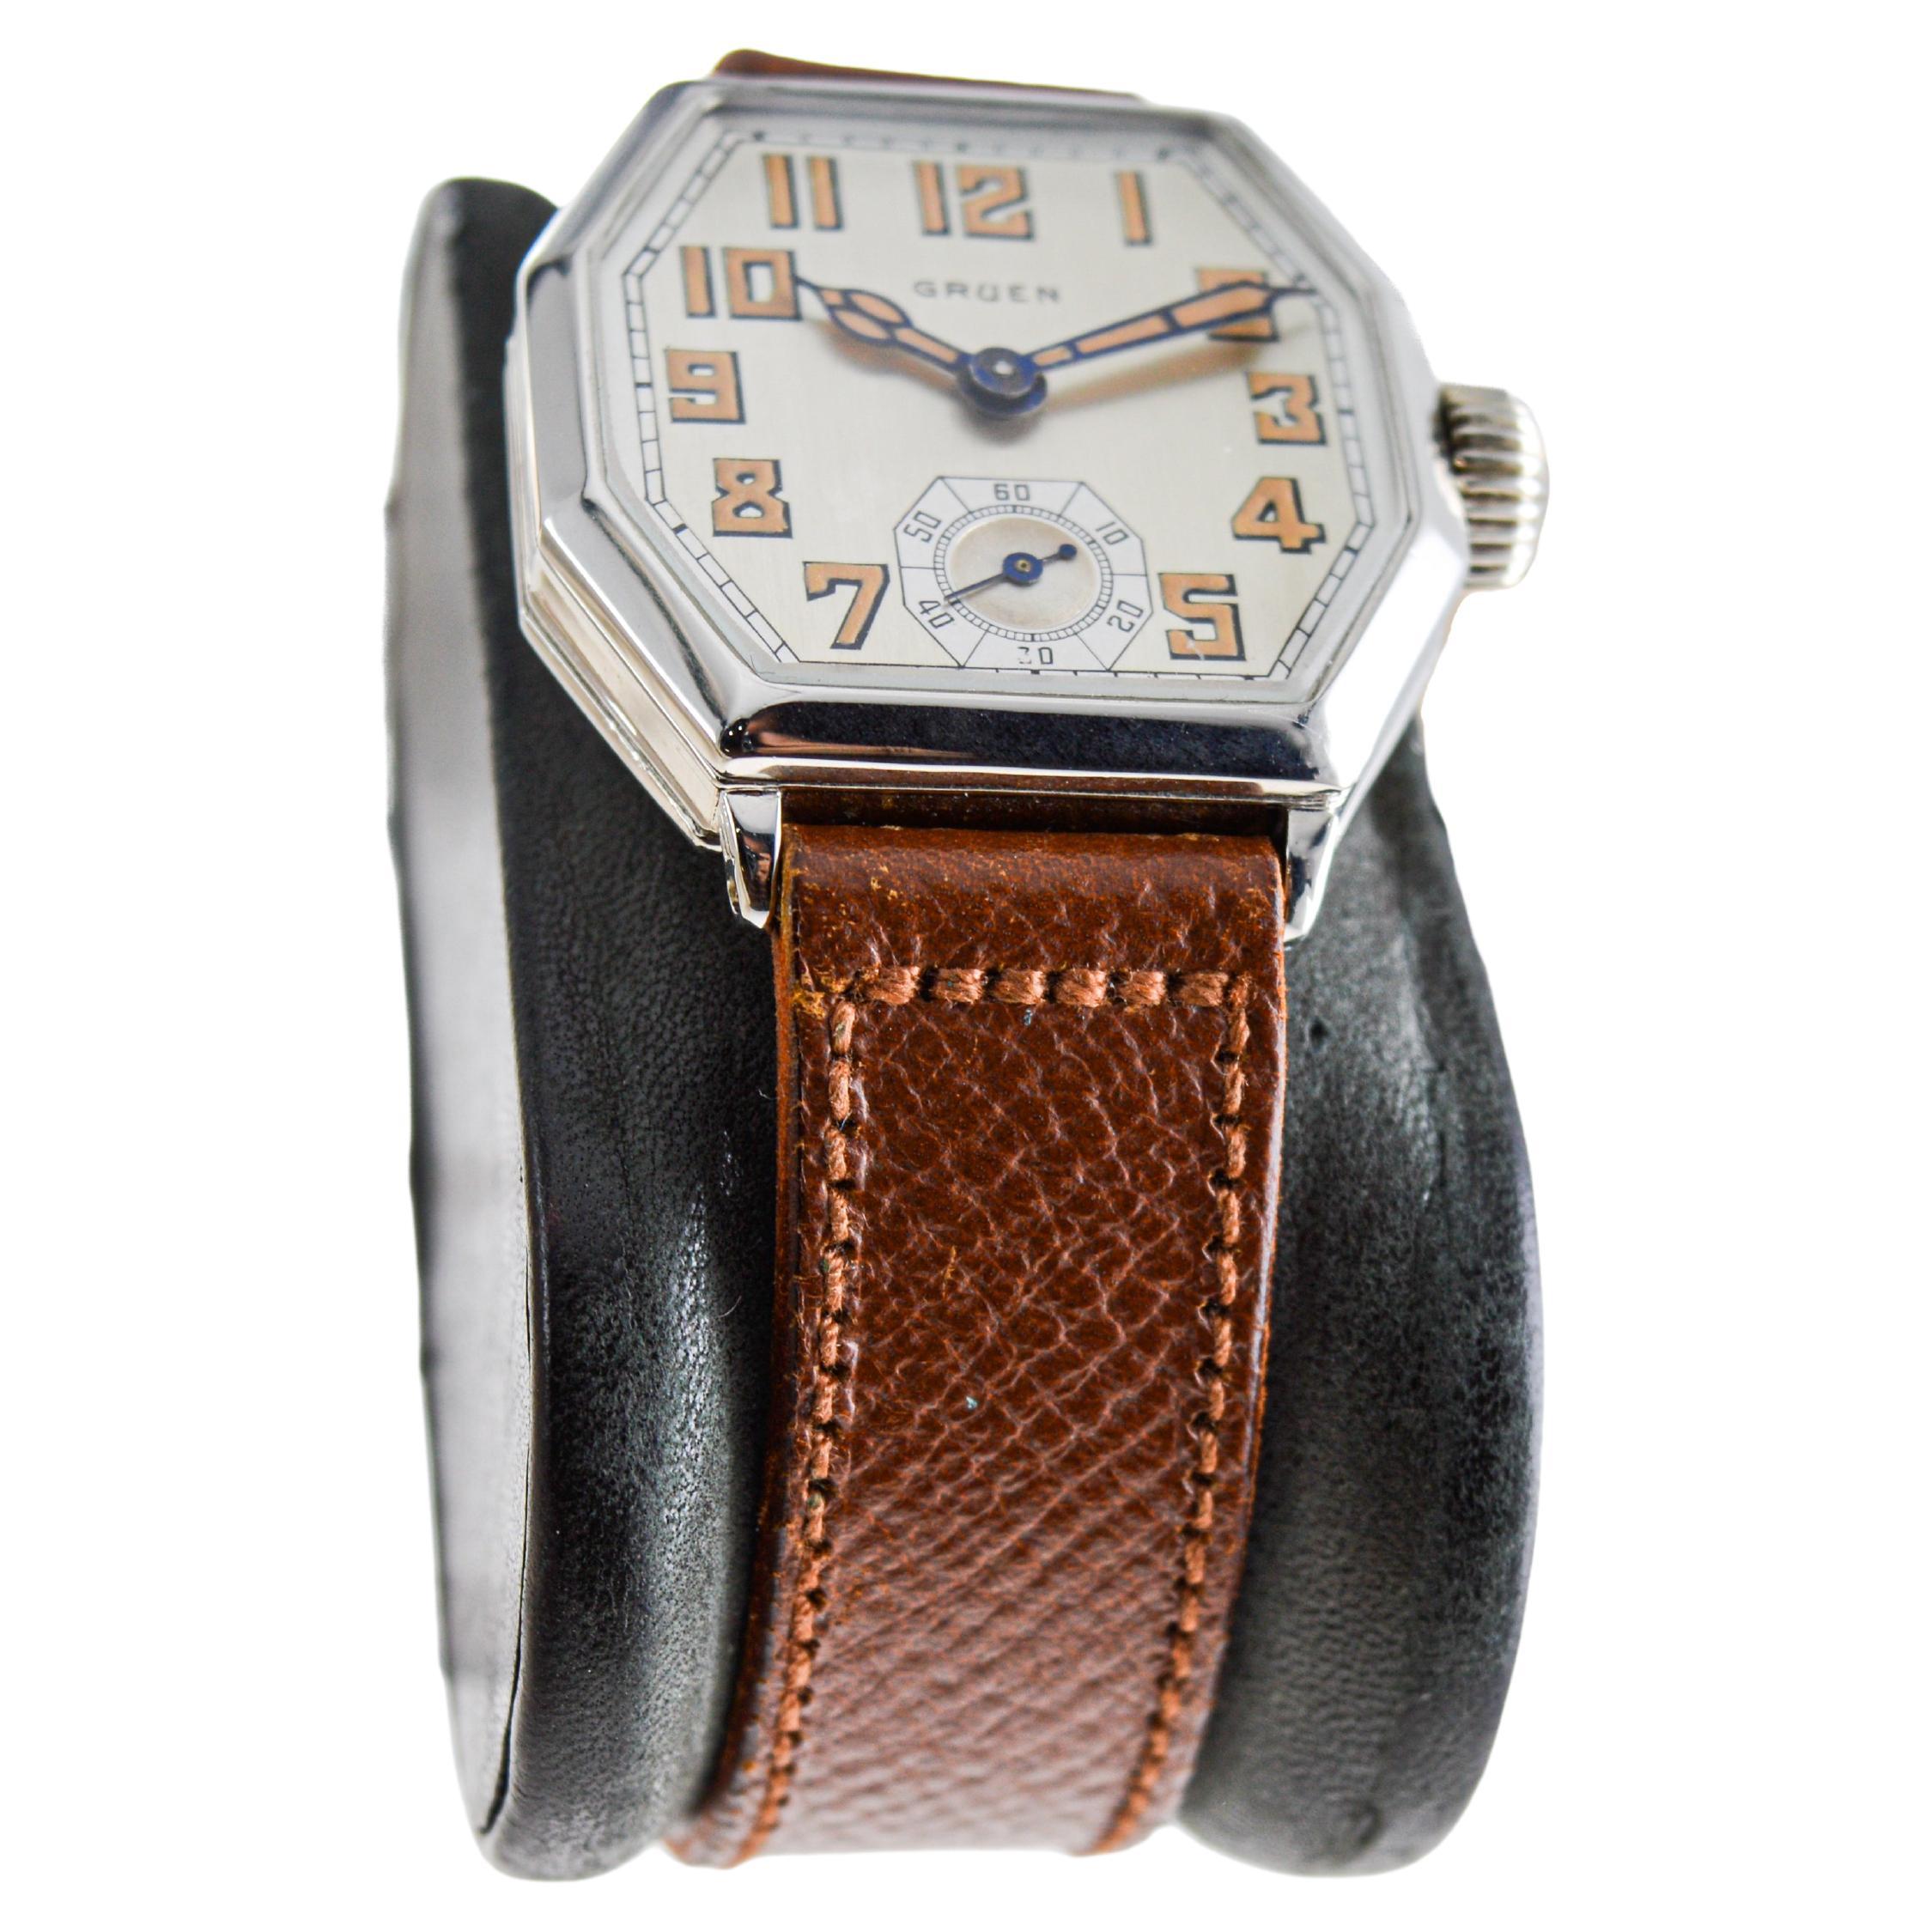 FABRIK / HAUS: Gruen Watch Company
STIL / REFERENZ: Art Deco / Achteck 
METALL / MATERIAL: 14Kt Weißgold gefüllt
CIRCA / JAHR: 1928
ABMESSUNGEN / GRÖSSE: Länge 37mm X Durchmesser 30mm
UHRWERK / KALIBER: Handaufzug / 15 Jewels / Kaliber